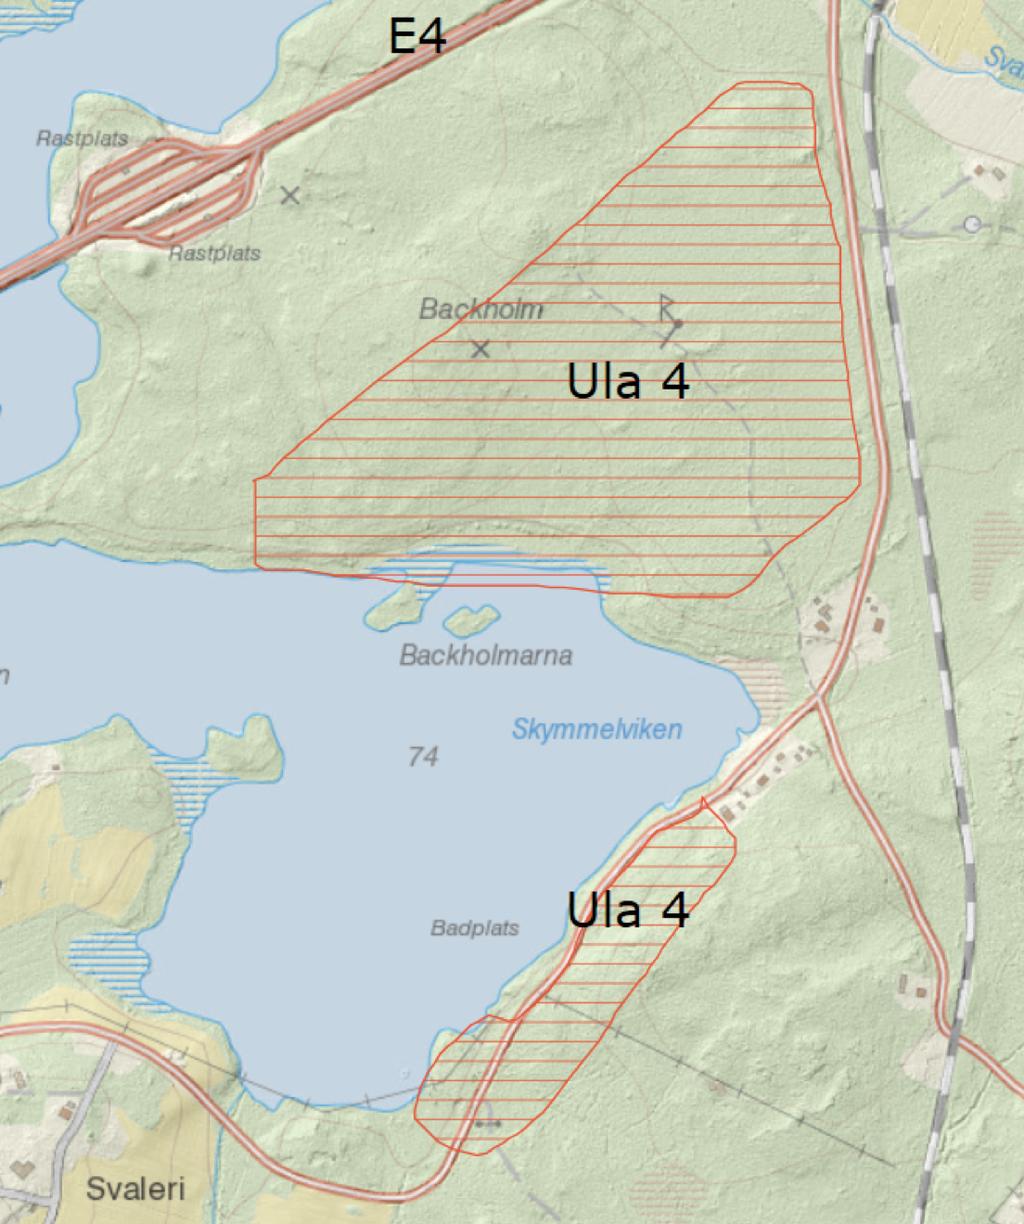 Ula 5 och Ula 6, Bandsjöarna Två områden vid Stor-Bandsjön och Lill-Bandsjön som ligger inom 5-10 km avstånd från Timrå centrum.